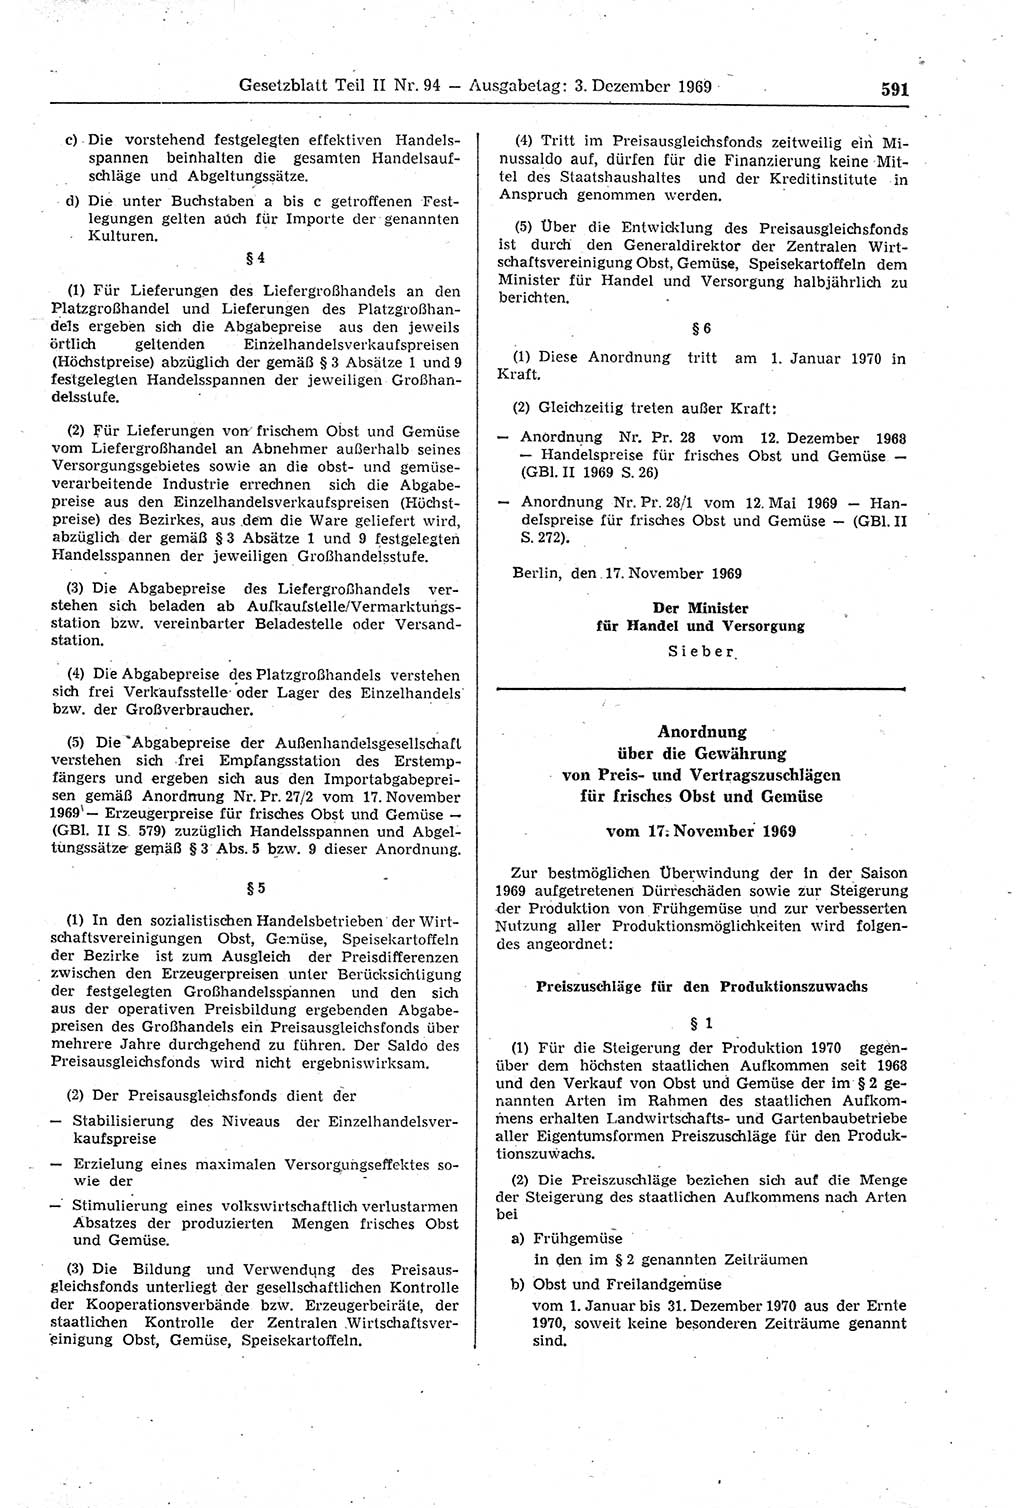 Gesetzblatt (GBl.) der Deutschen Demokratischen Republik (DDR) Teil ⅠⅠ 1969, Seite 591 (GBl. DDR ⅠⅠ 1969, S. 591)